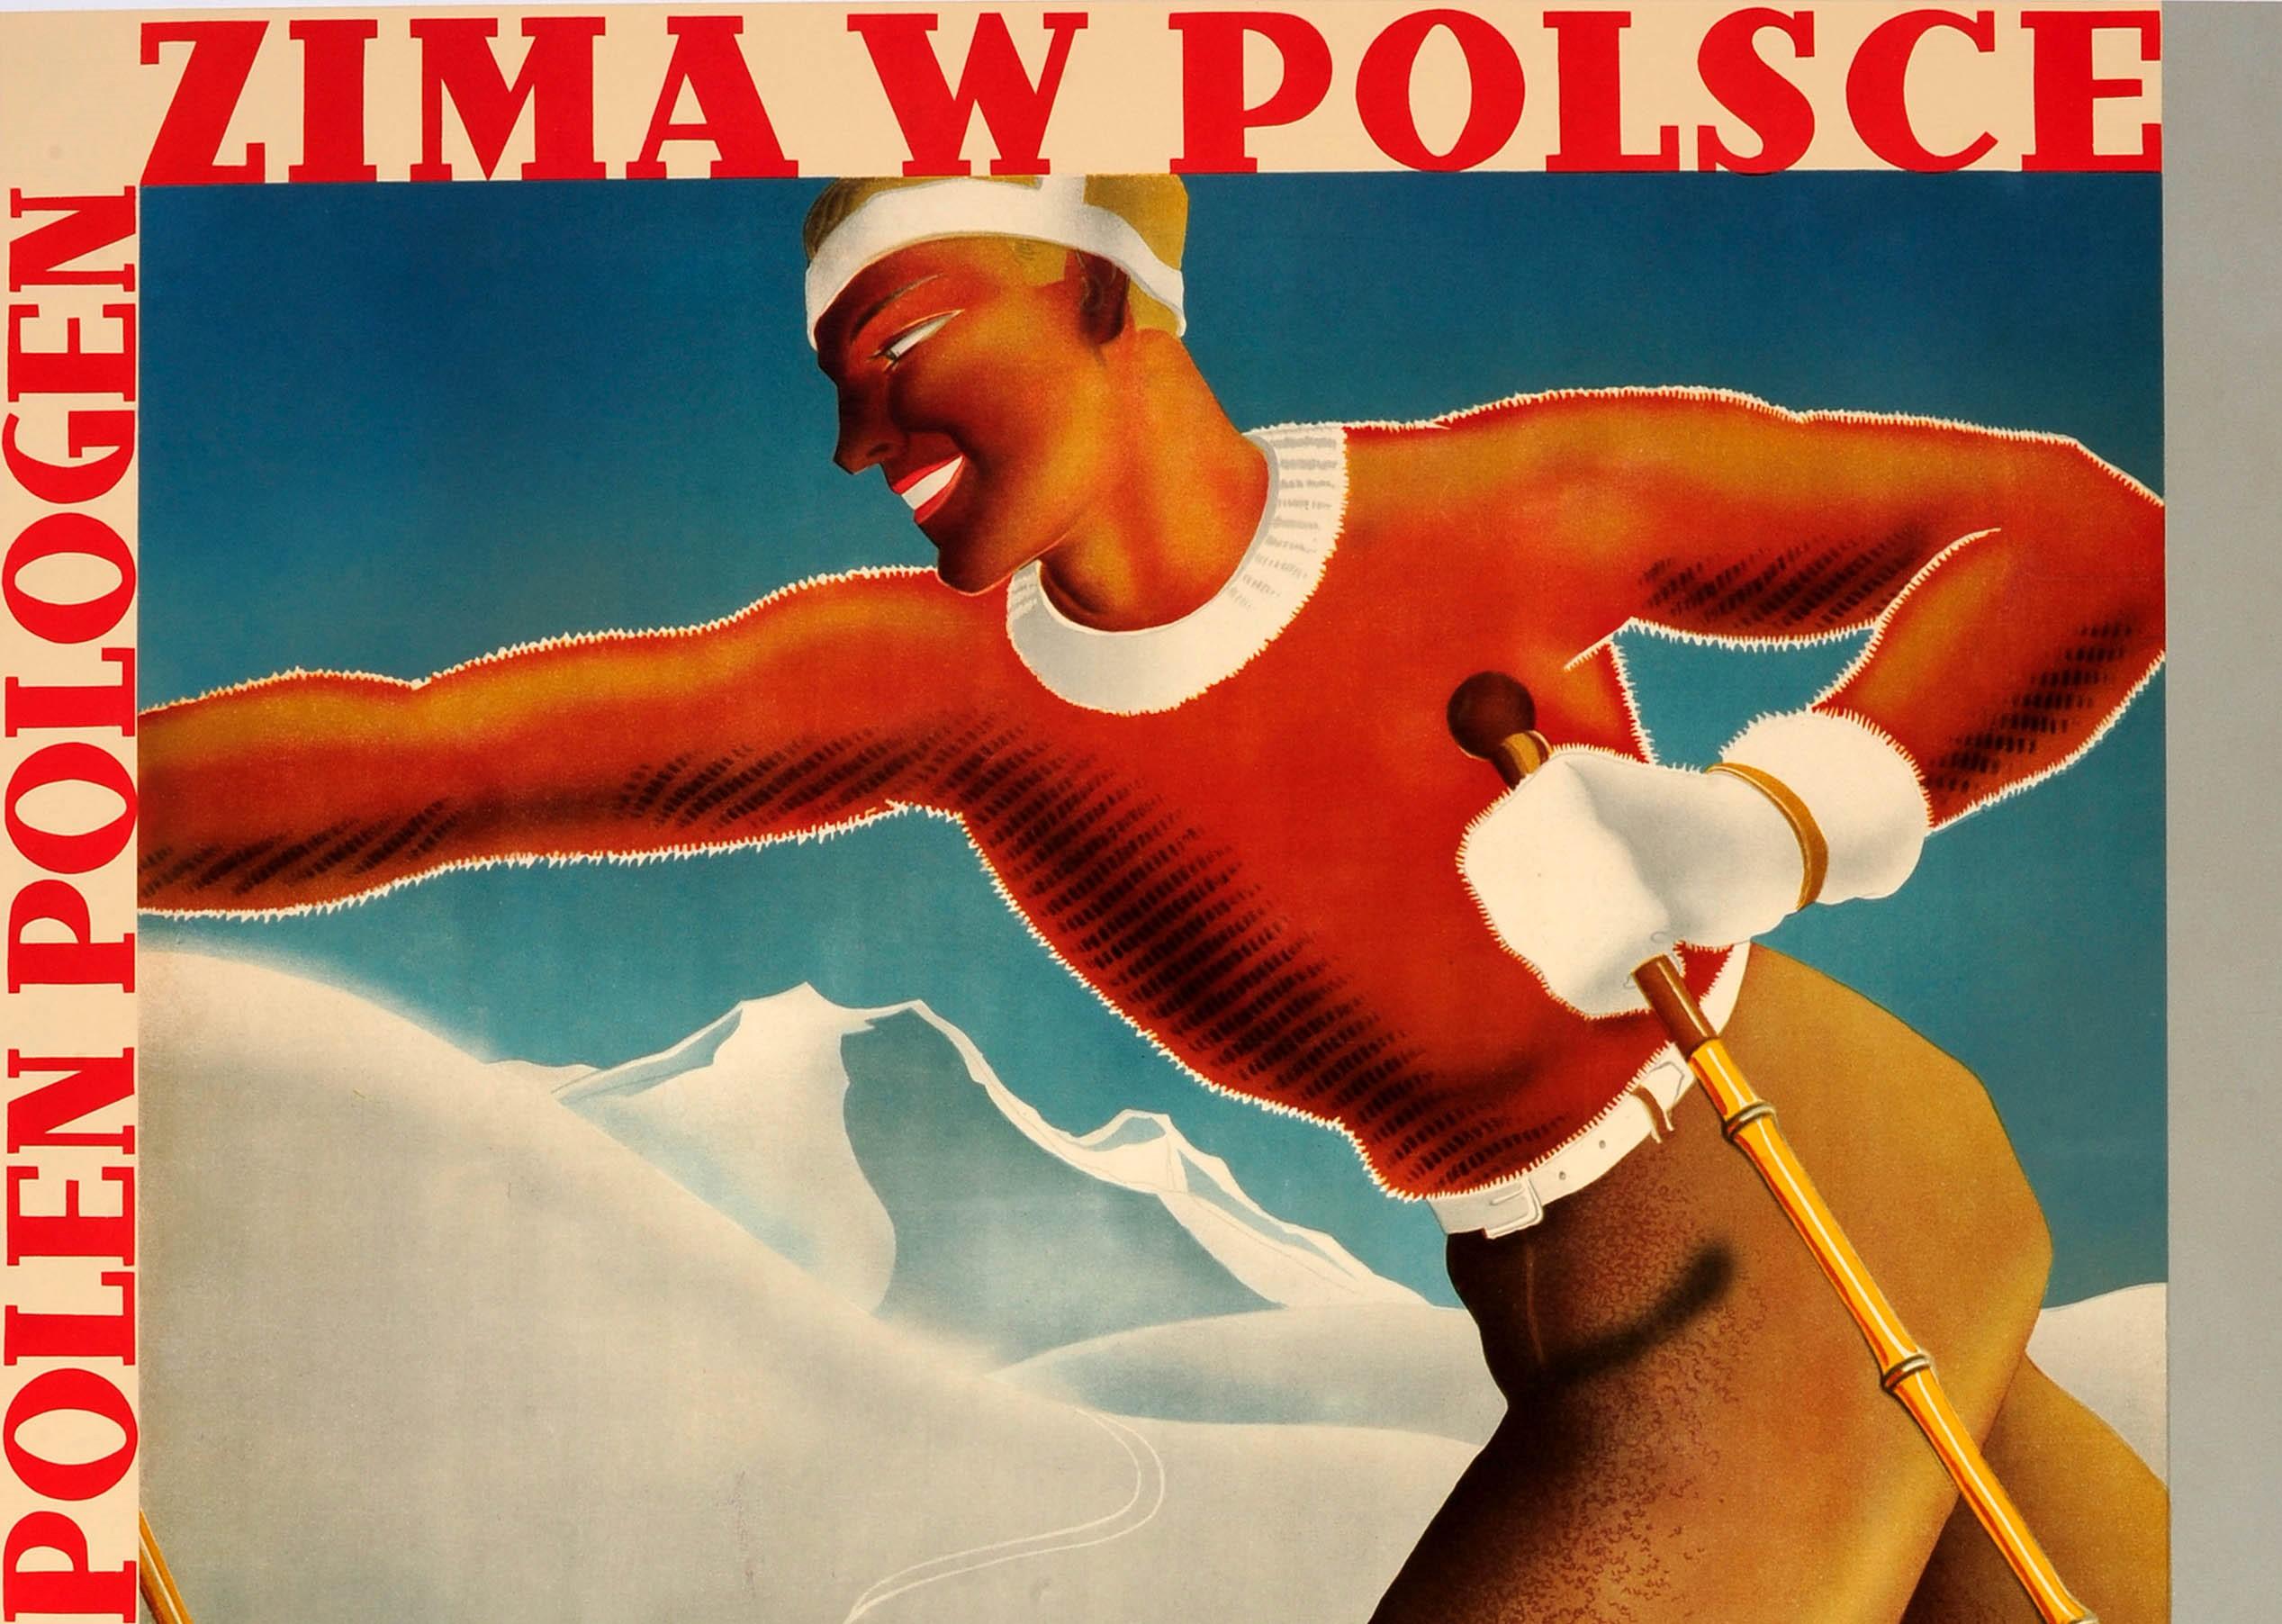 Affiche de ski vintage originale promouvant l'hiver en Pologne / Zima w Polsce présentant une illustration dynamique de style Art déco d'un skieur sur des skis en bois et des bâtons de ski sur une montagne enneigée au premier plan avec une maison en